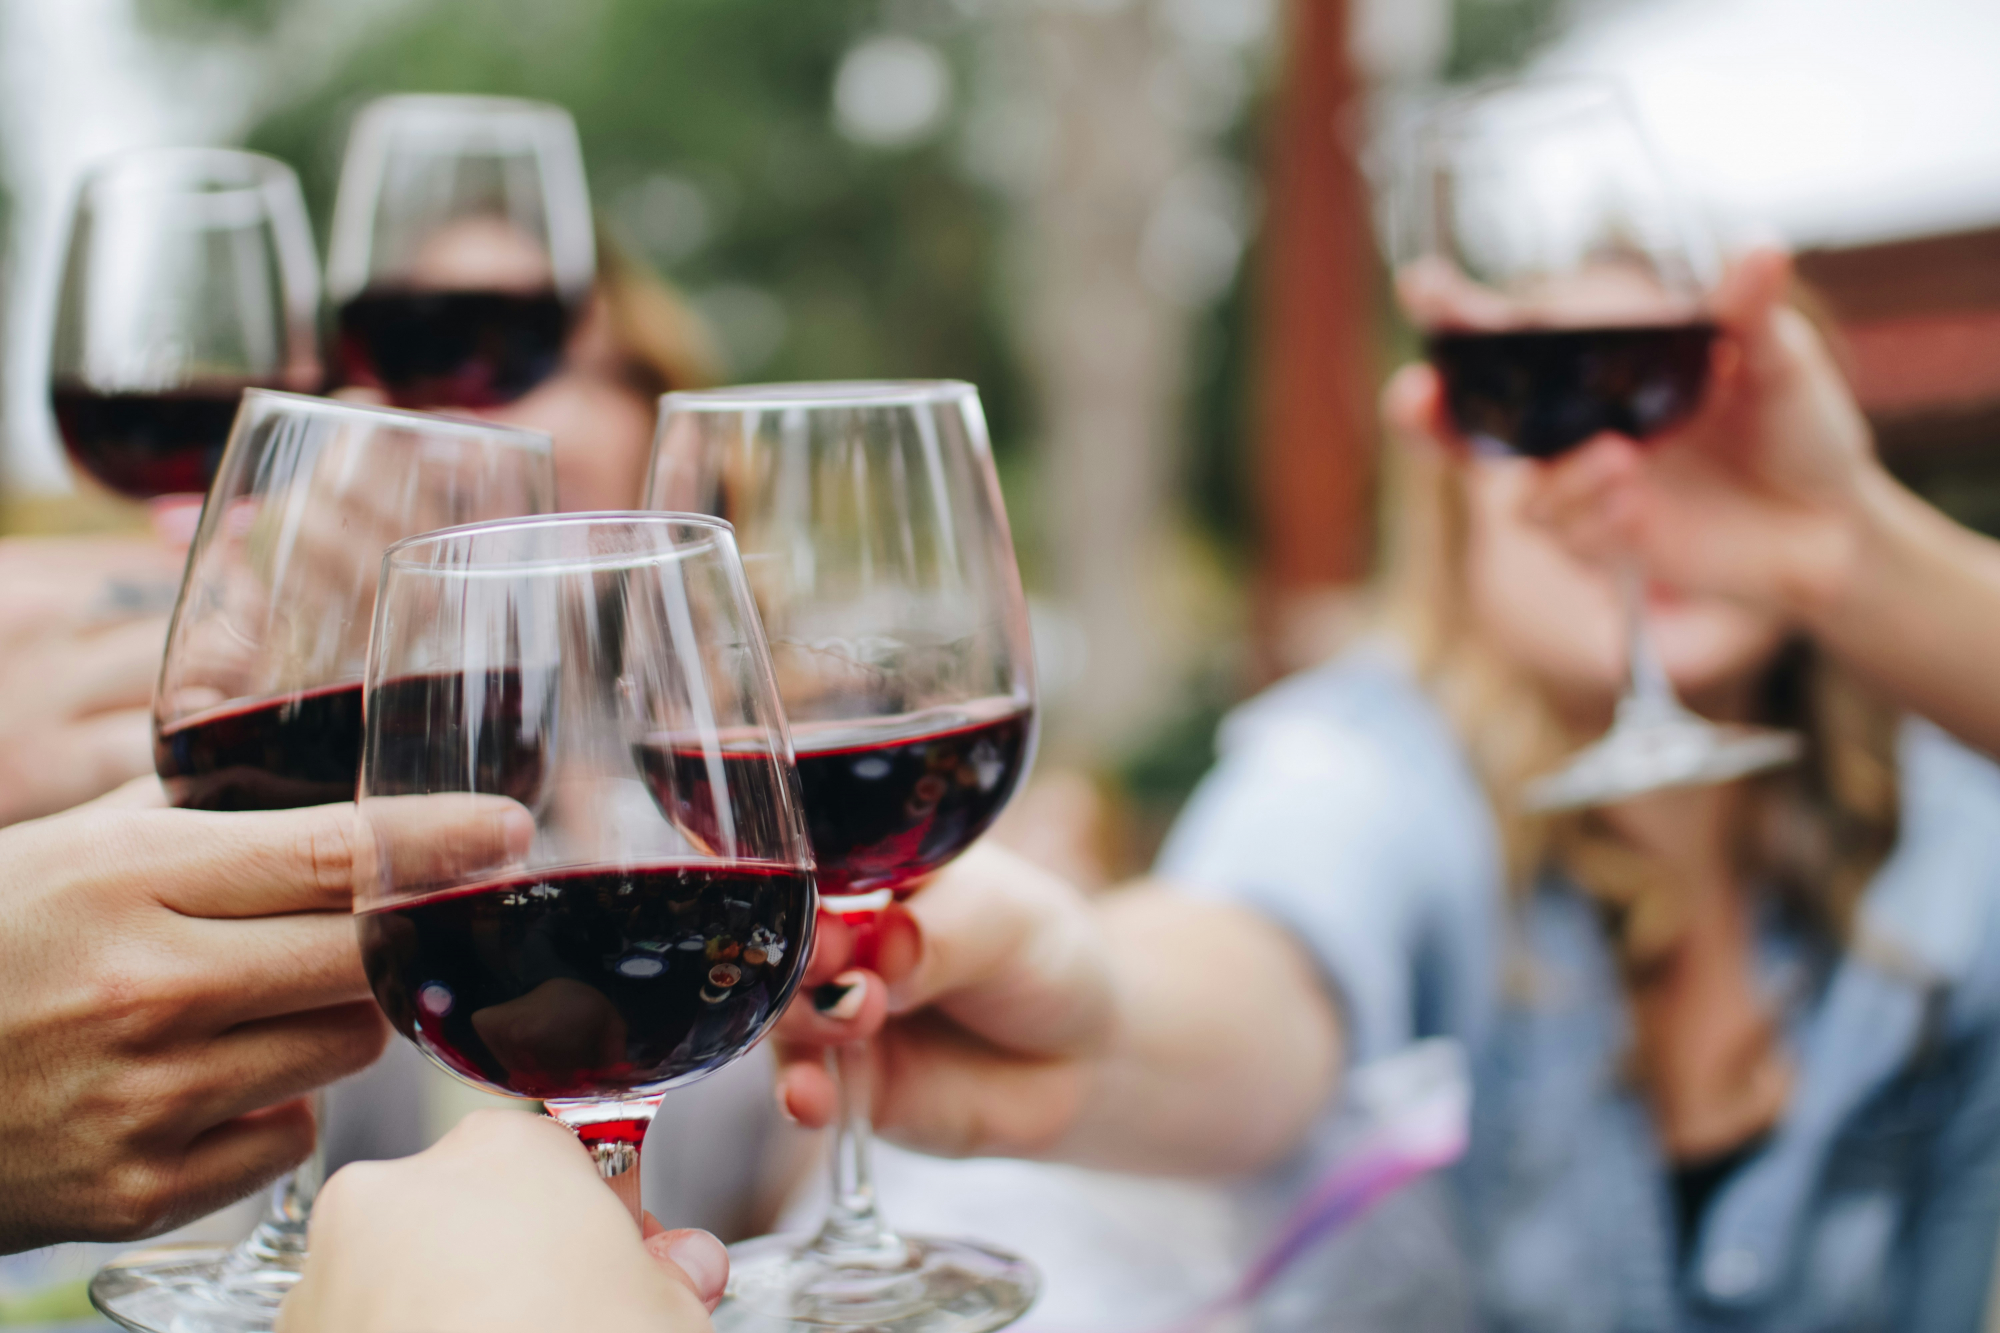 découvrez une sélection de délicieux vins rouges provenant des meilleures régions viticoles du monde. profitez d'une expérience unique avec nos vins rouges élégants et savoureux.